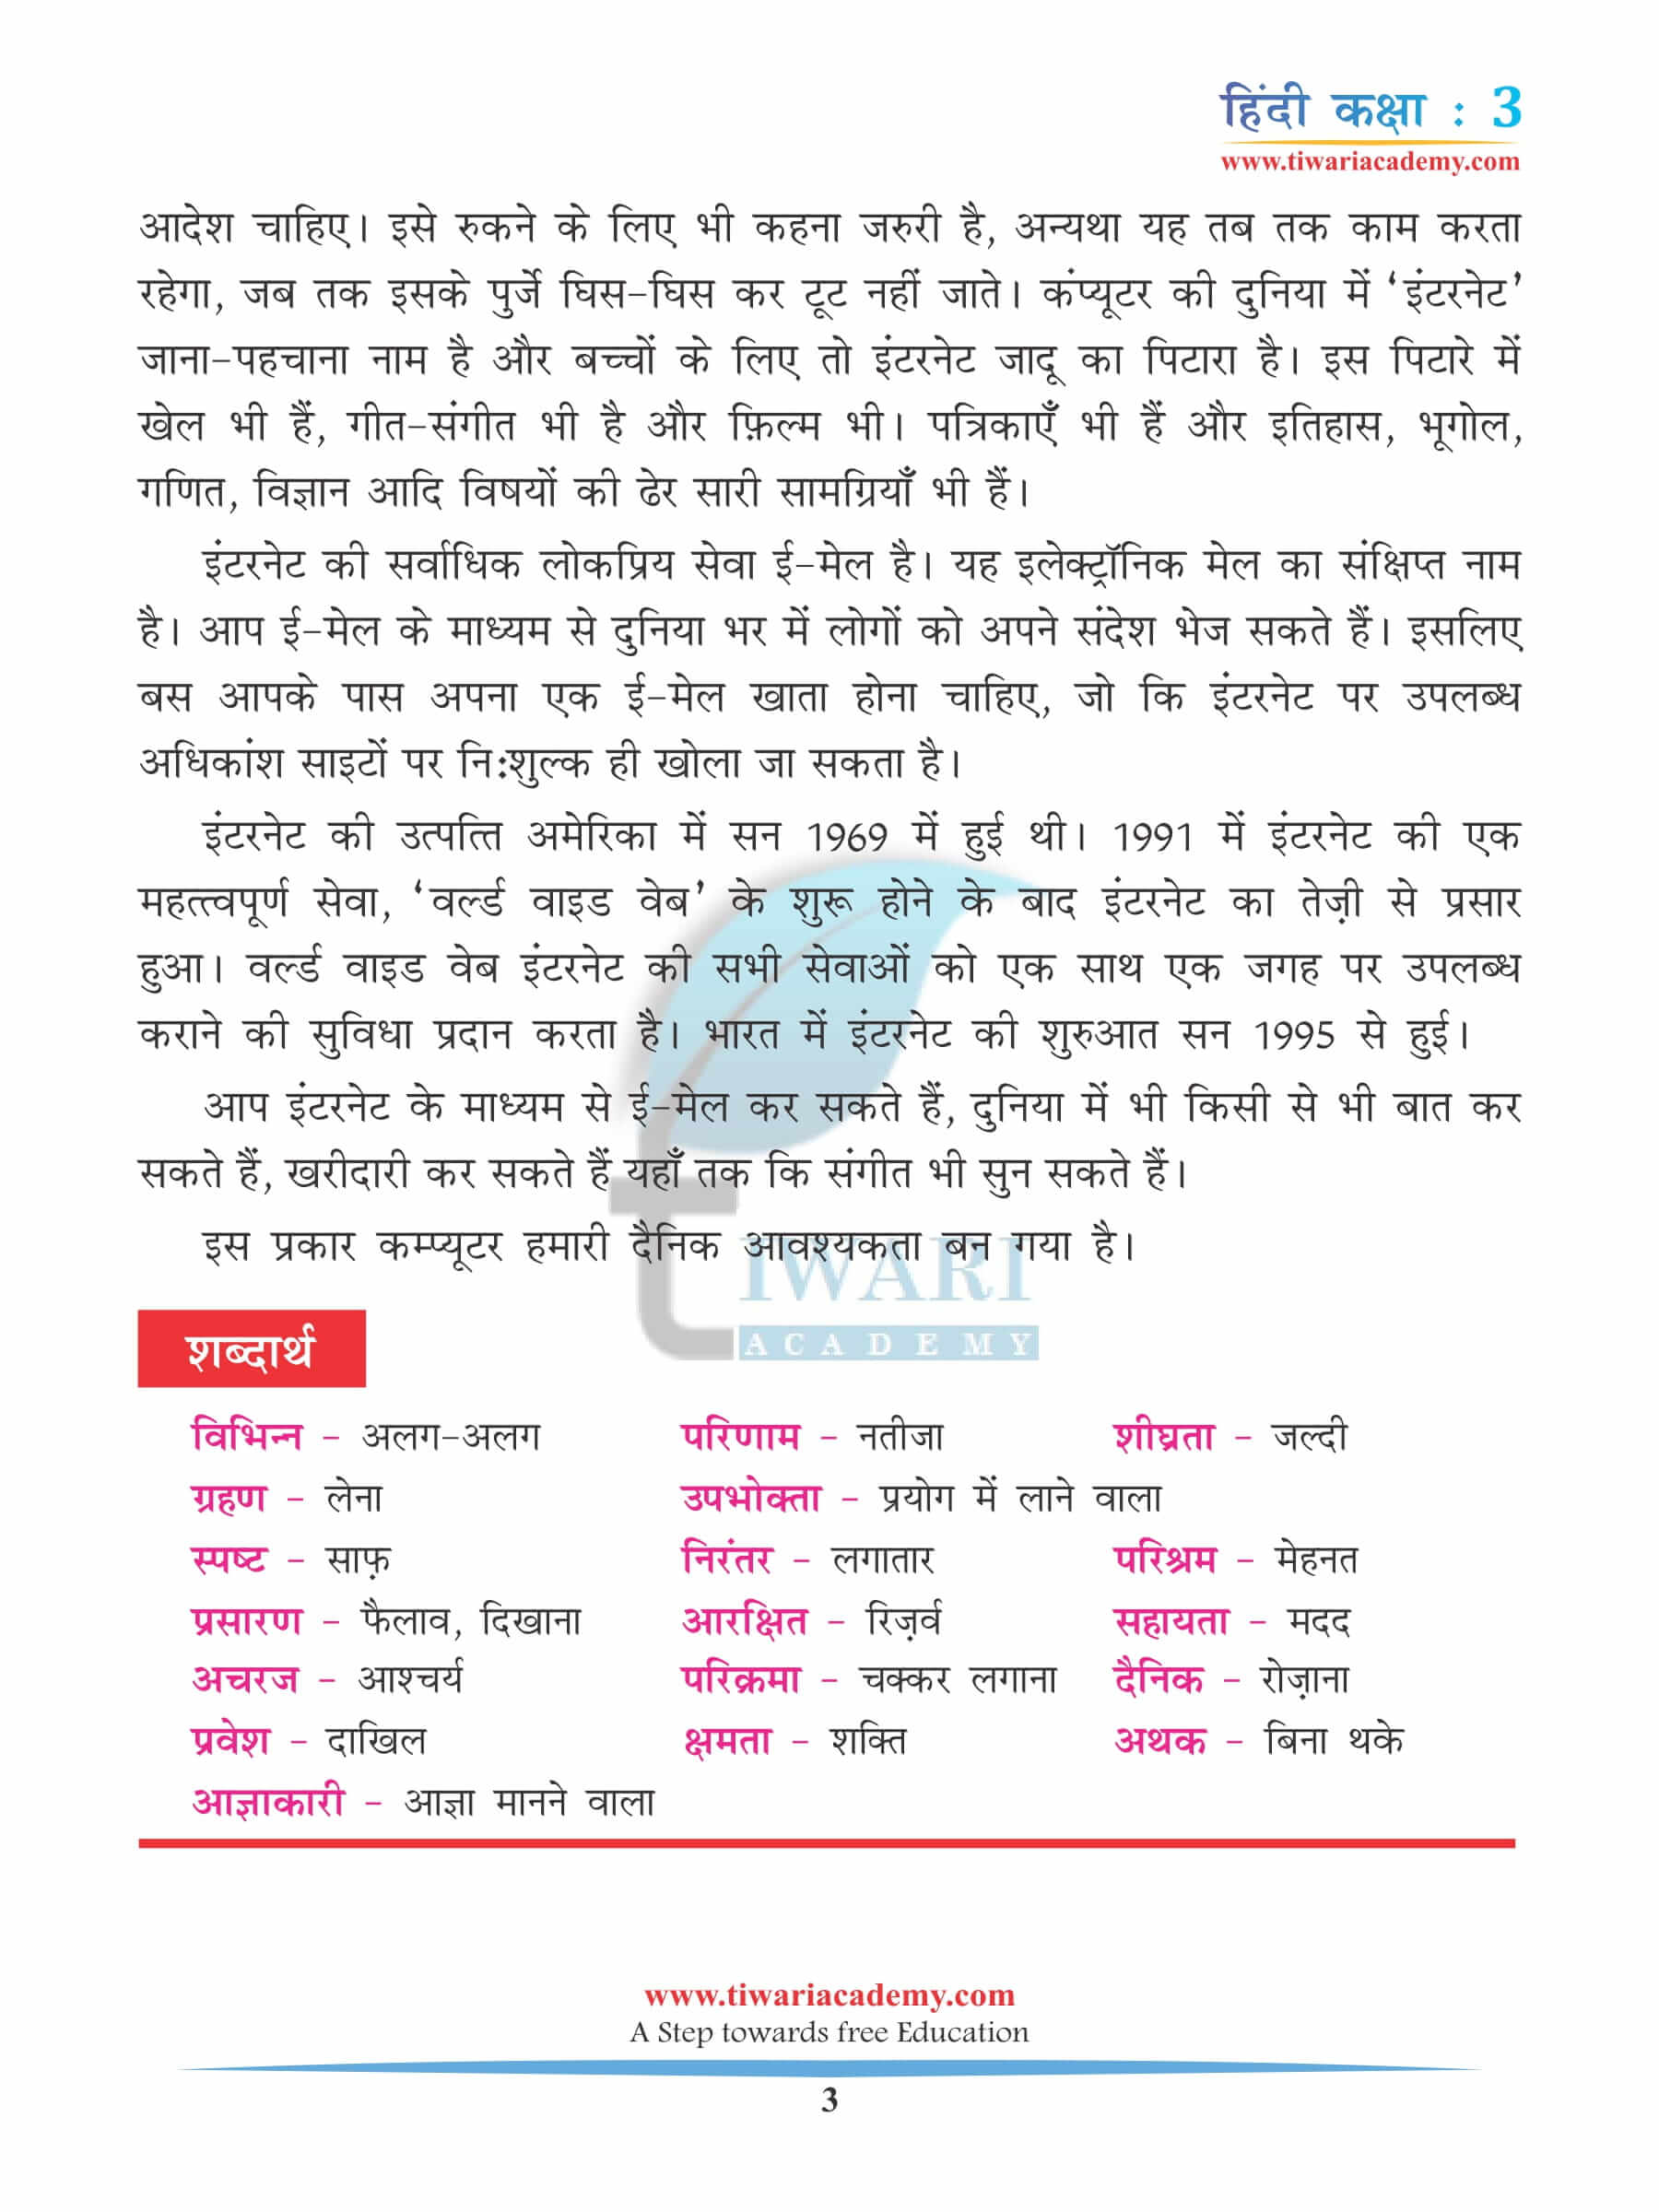 कक्षा 3 हिंदी अध्याय 14 अभ्यास की बुक